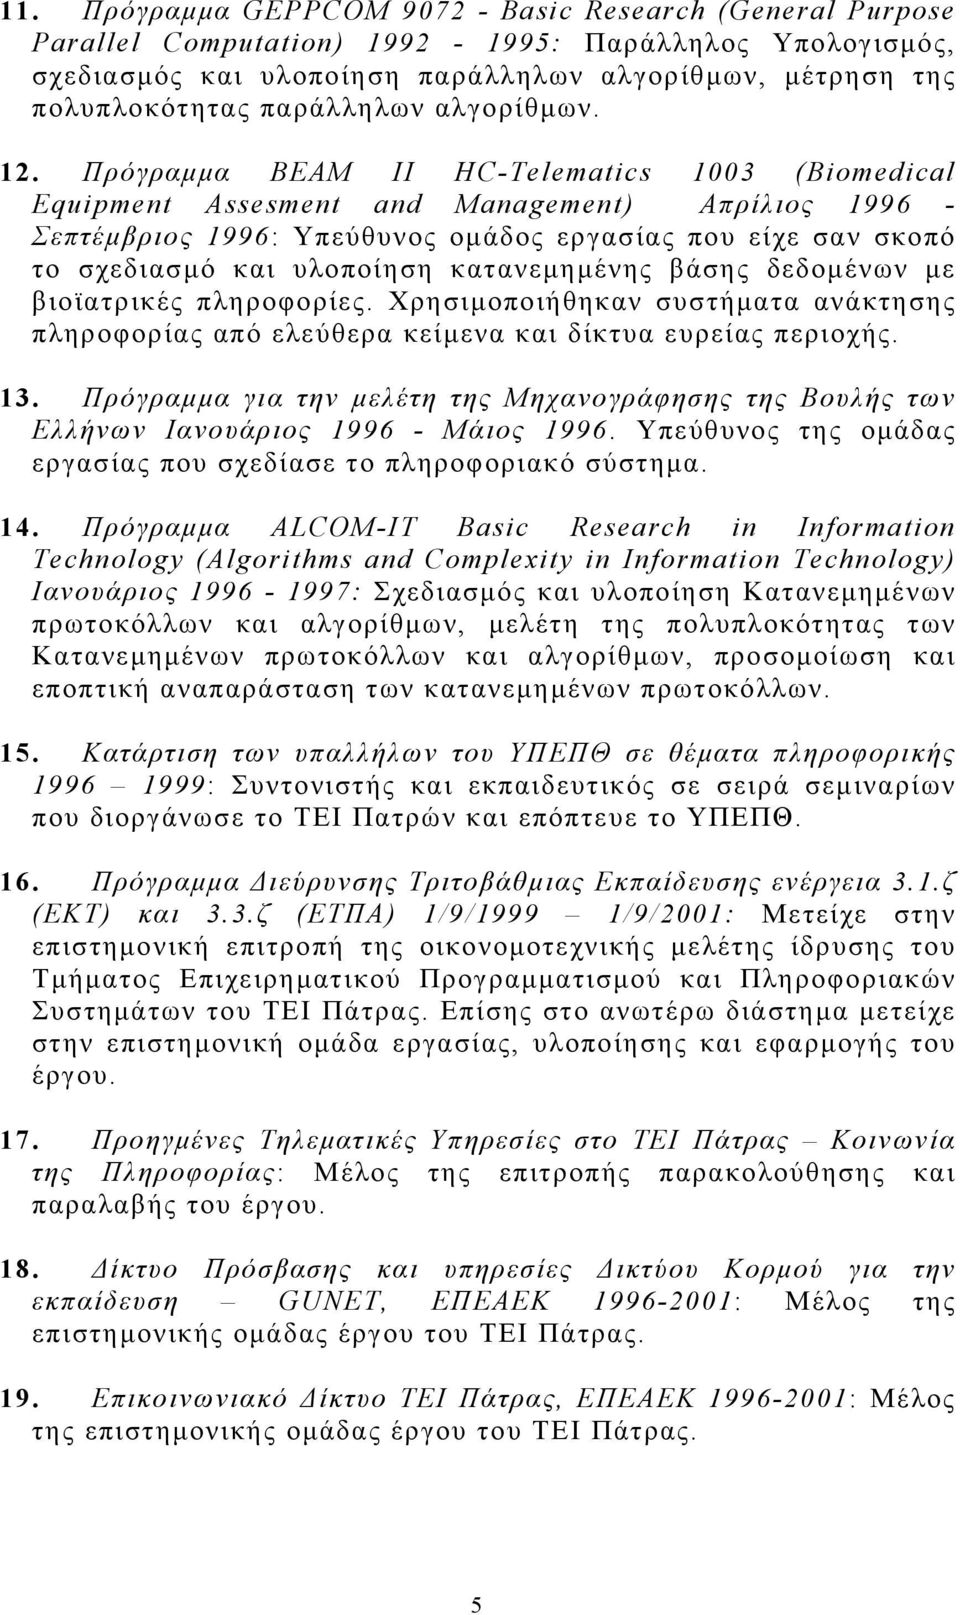 Πρόγραμμα ΒΕΑΜ ΙΙ HC-Telematics 1003 (Biomedical Equipment Assesment and Management) Απρίλιος 1996 - Σεπτέμβριος 1996: Υπεύθυνος ομάδος εργασίας που είχε σαν σκοπό το σχεδιασμό και υλοποίηση